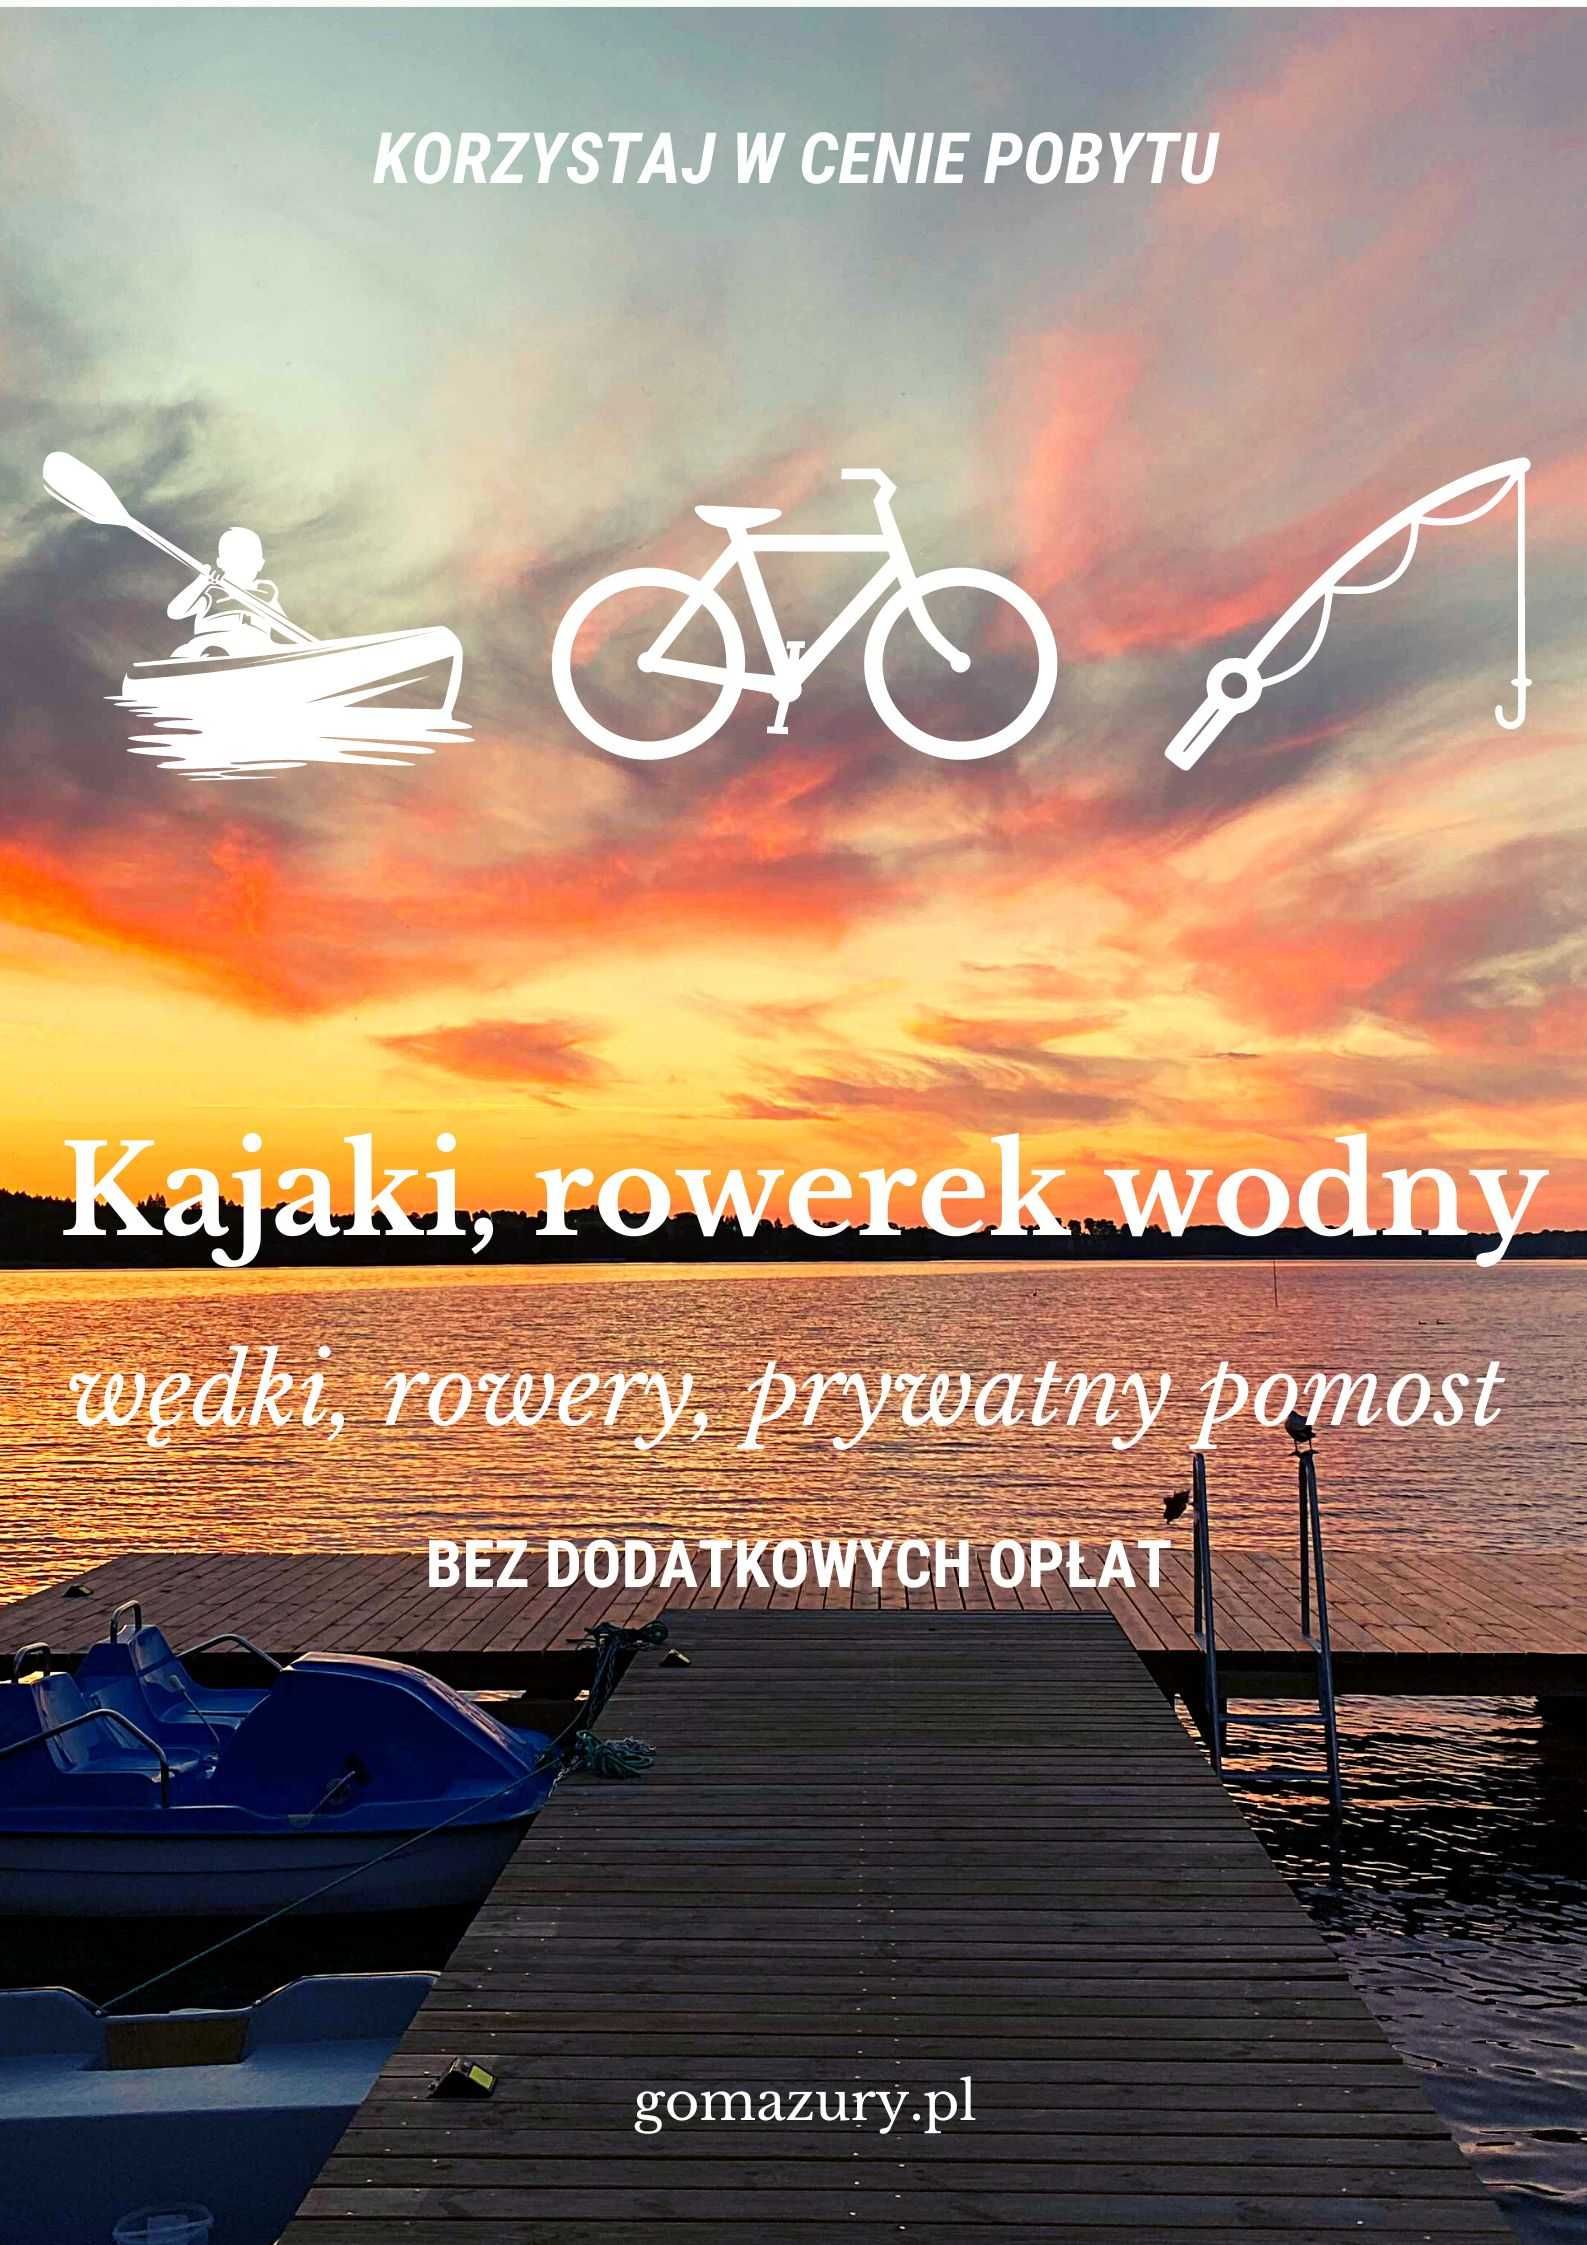 Wakacje nad jeziorem na Mazurach - Mrągowo + rowery, kajaki, pomost